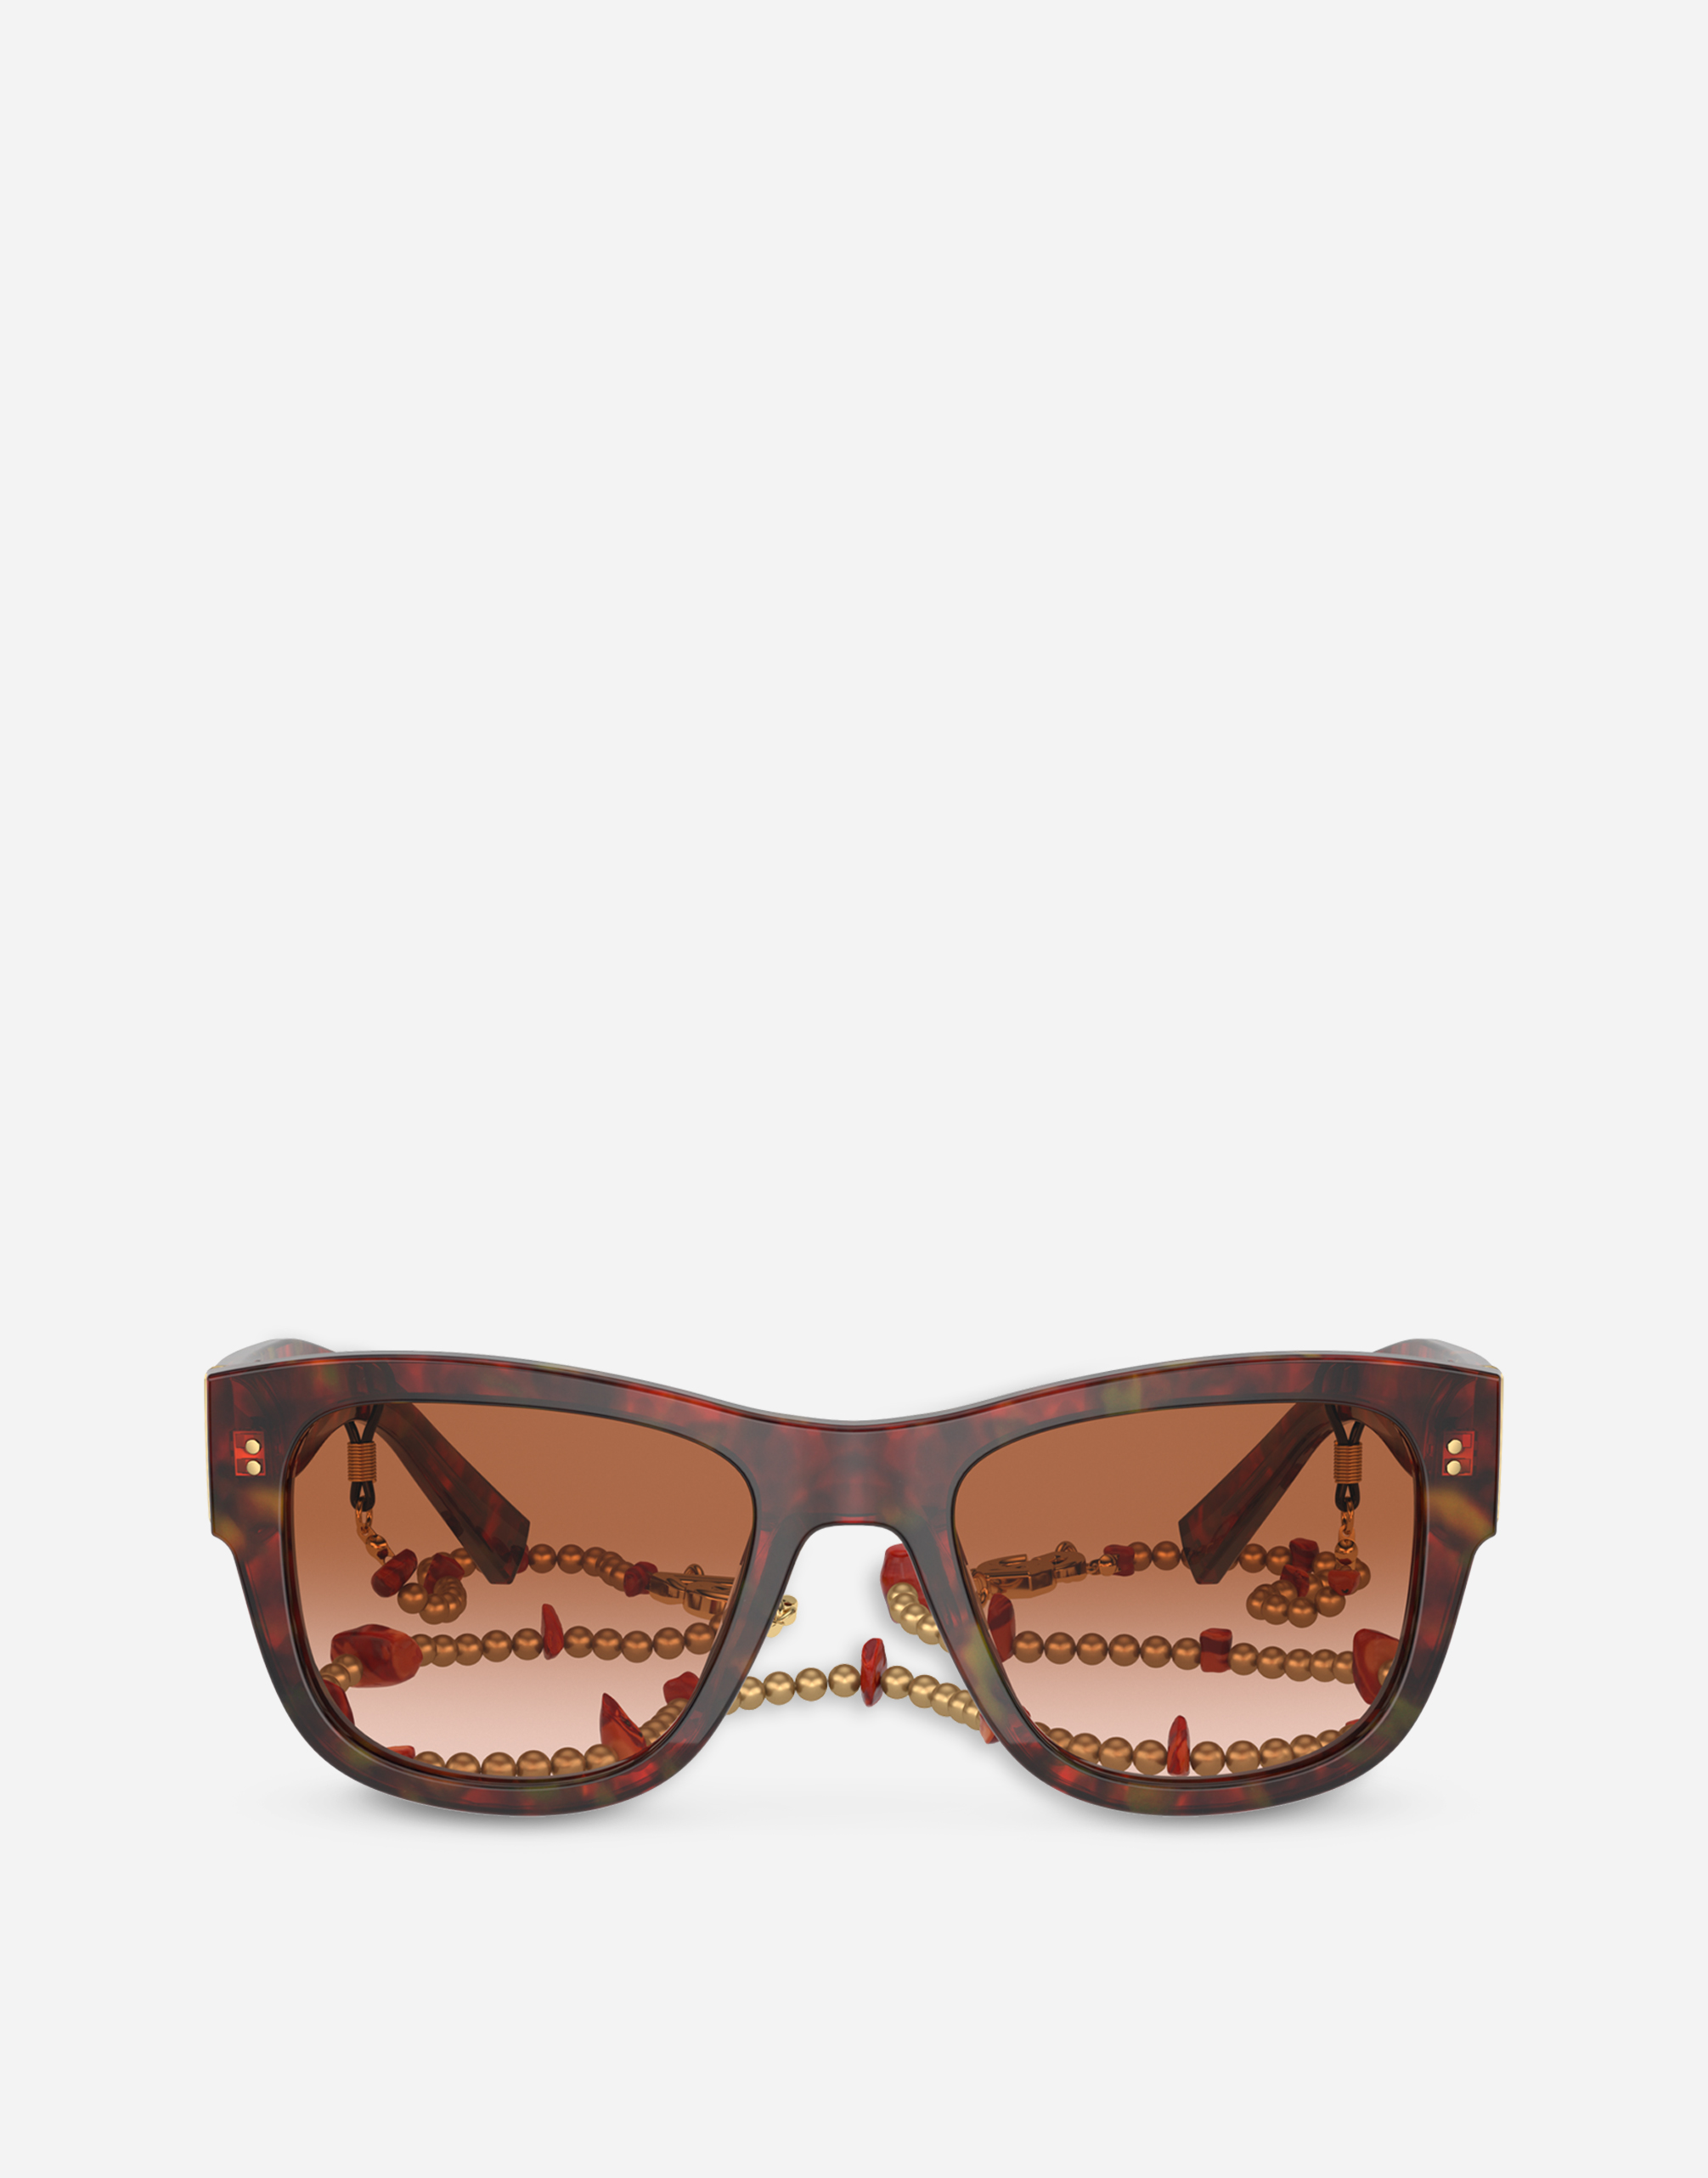 Corallo sunglasses in Red havana